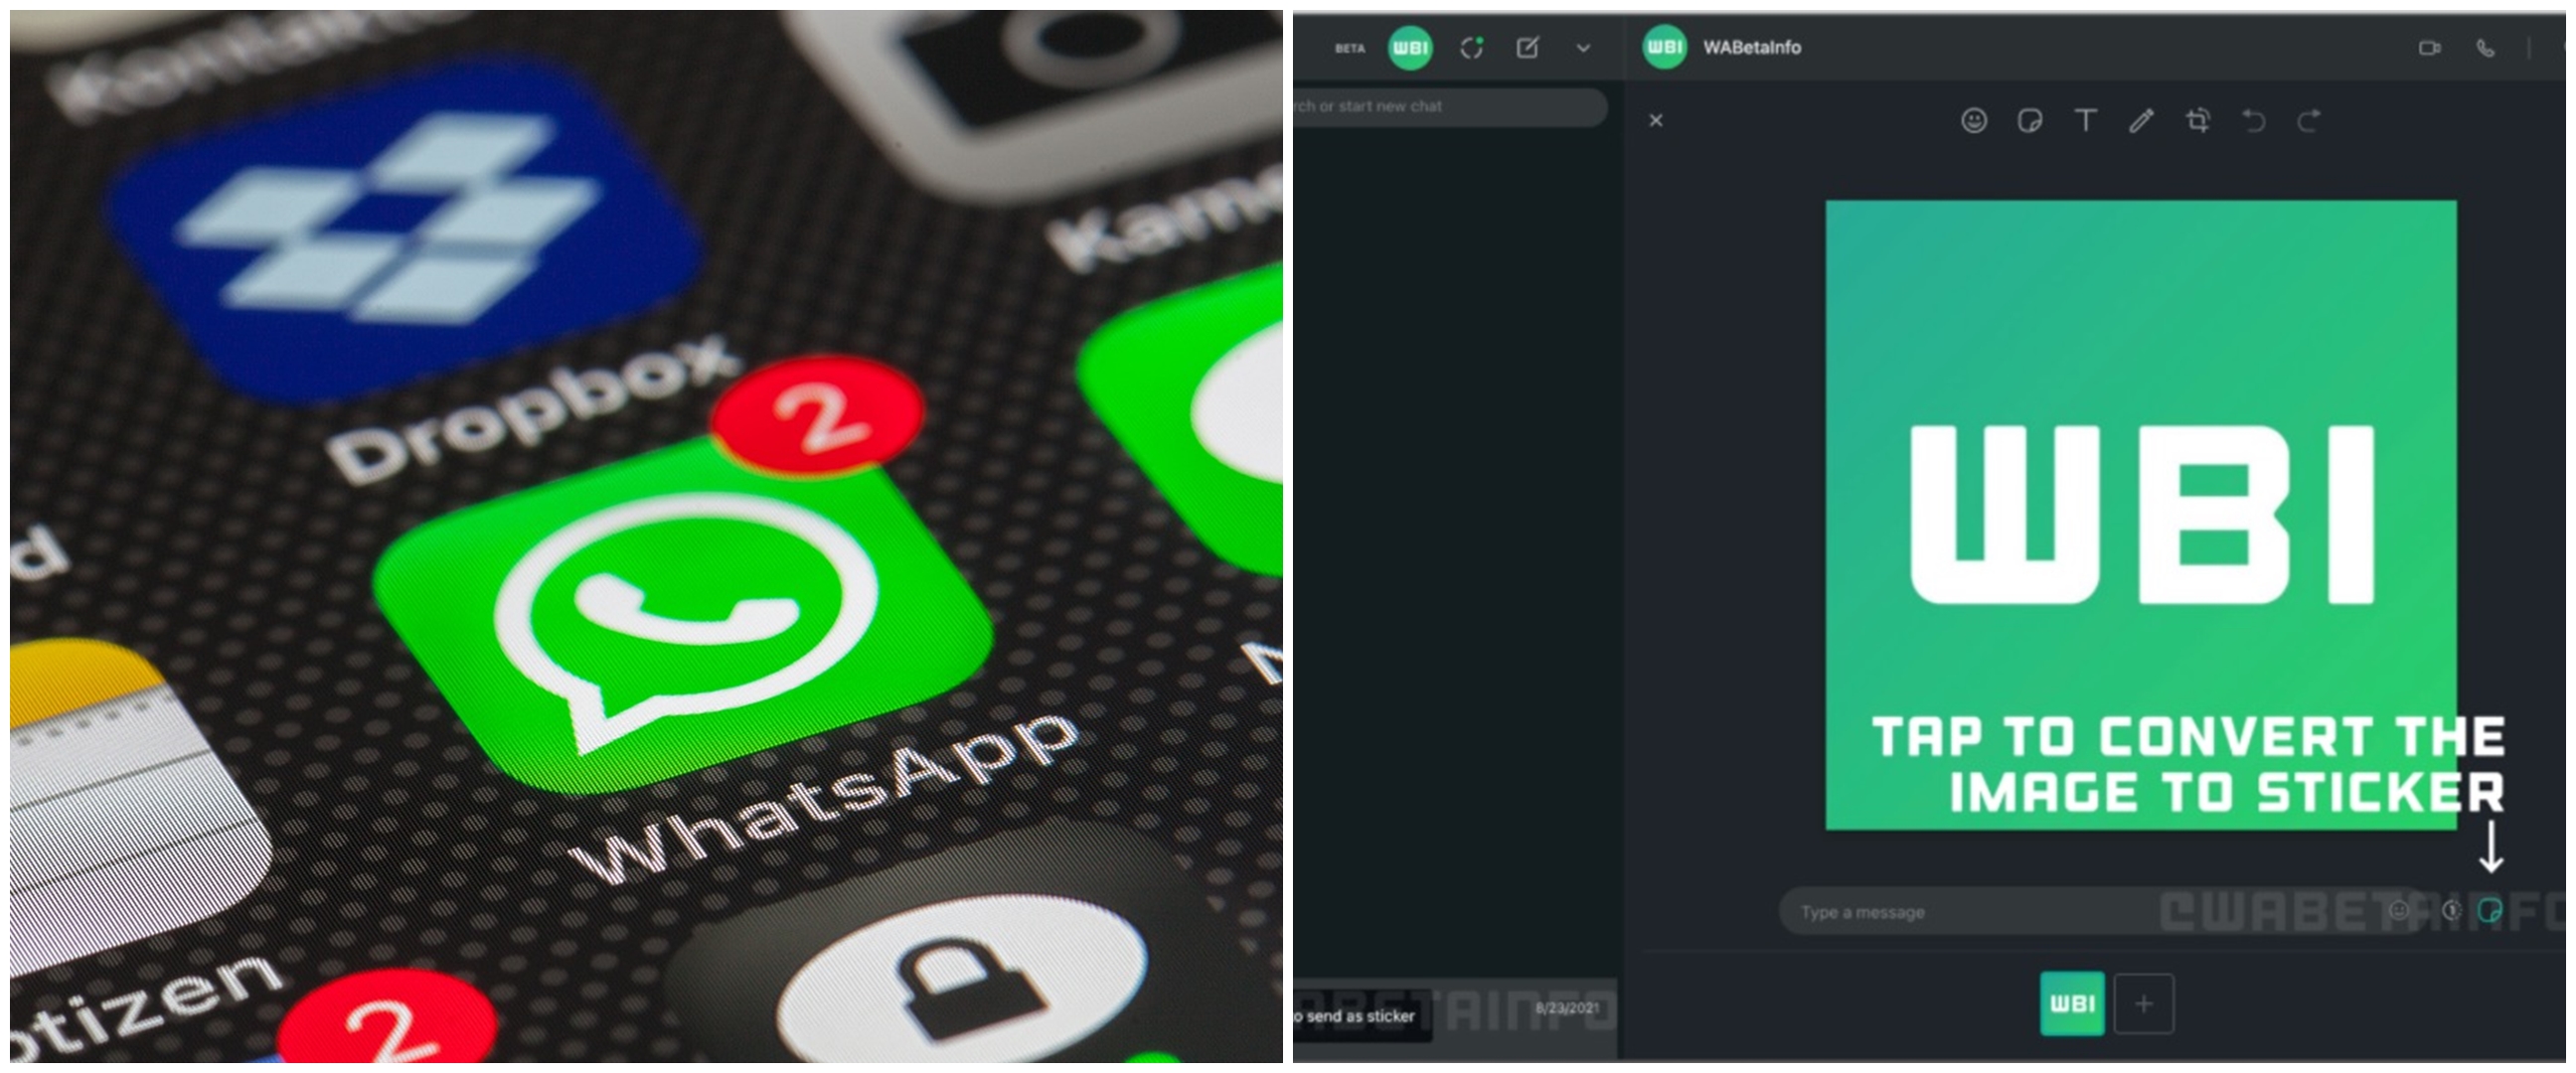 WhatsApp hadirkan tampilan baru, kirim foto bisa pakai stiker